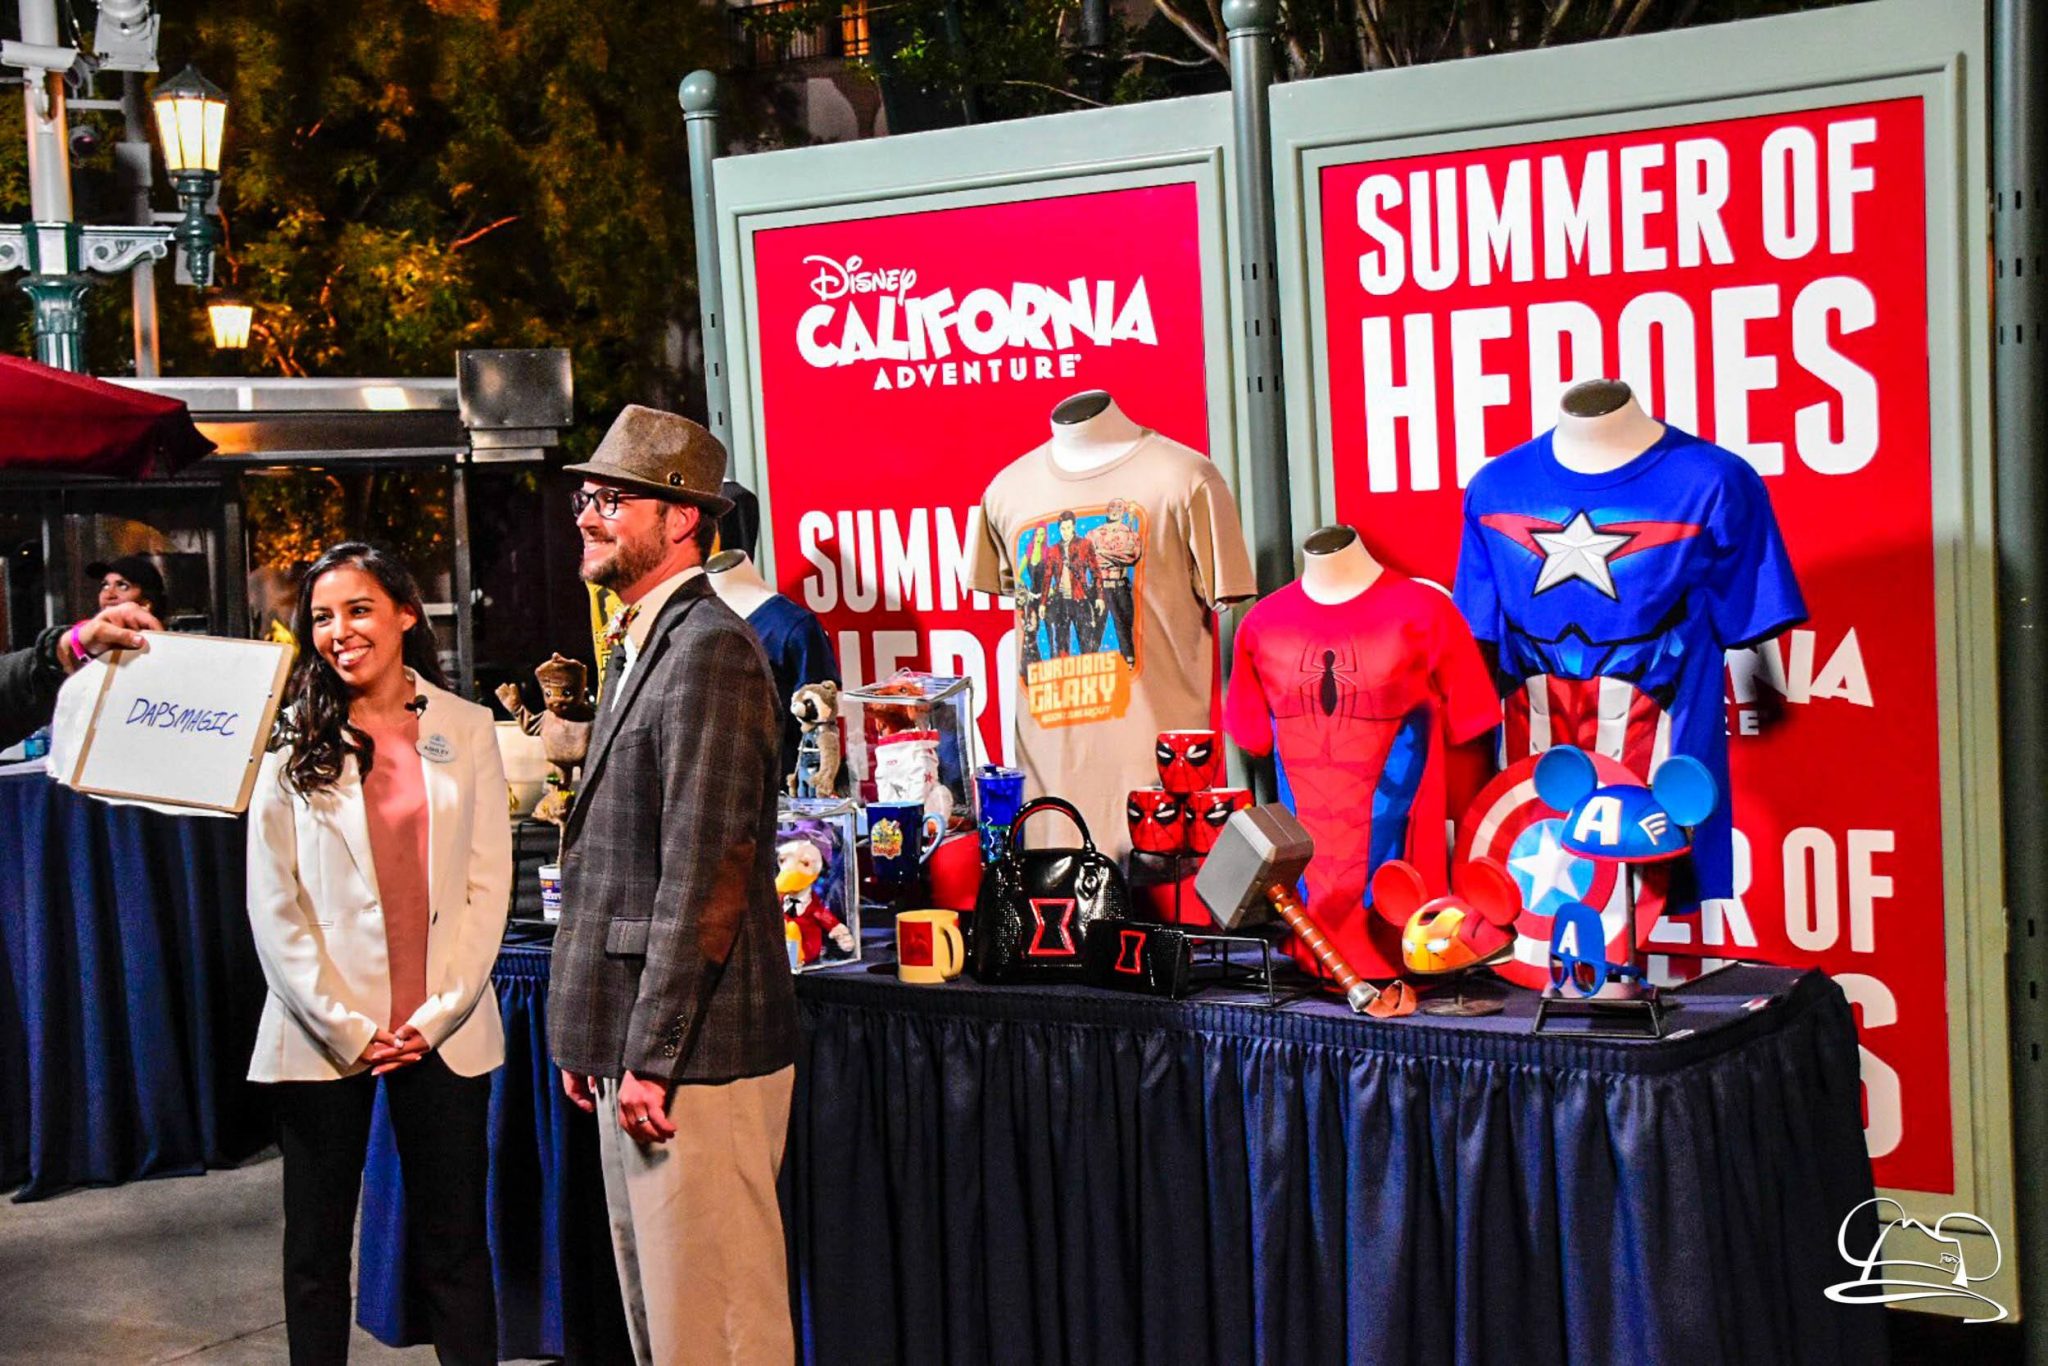 Dancing Groot Leads Merchandise Offerings at Summer of Heroes